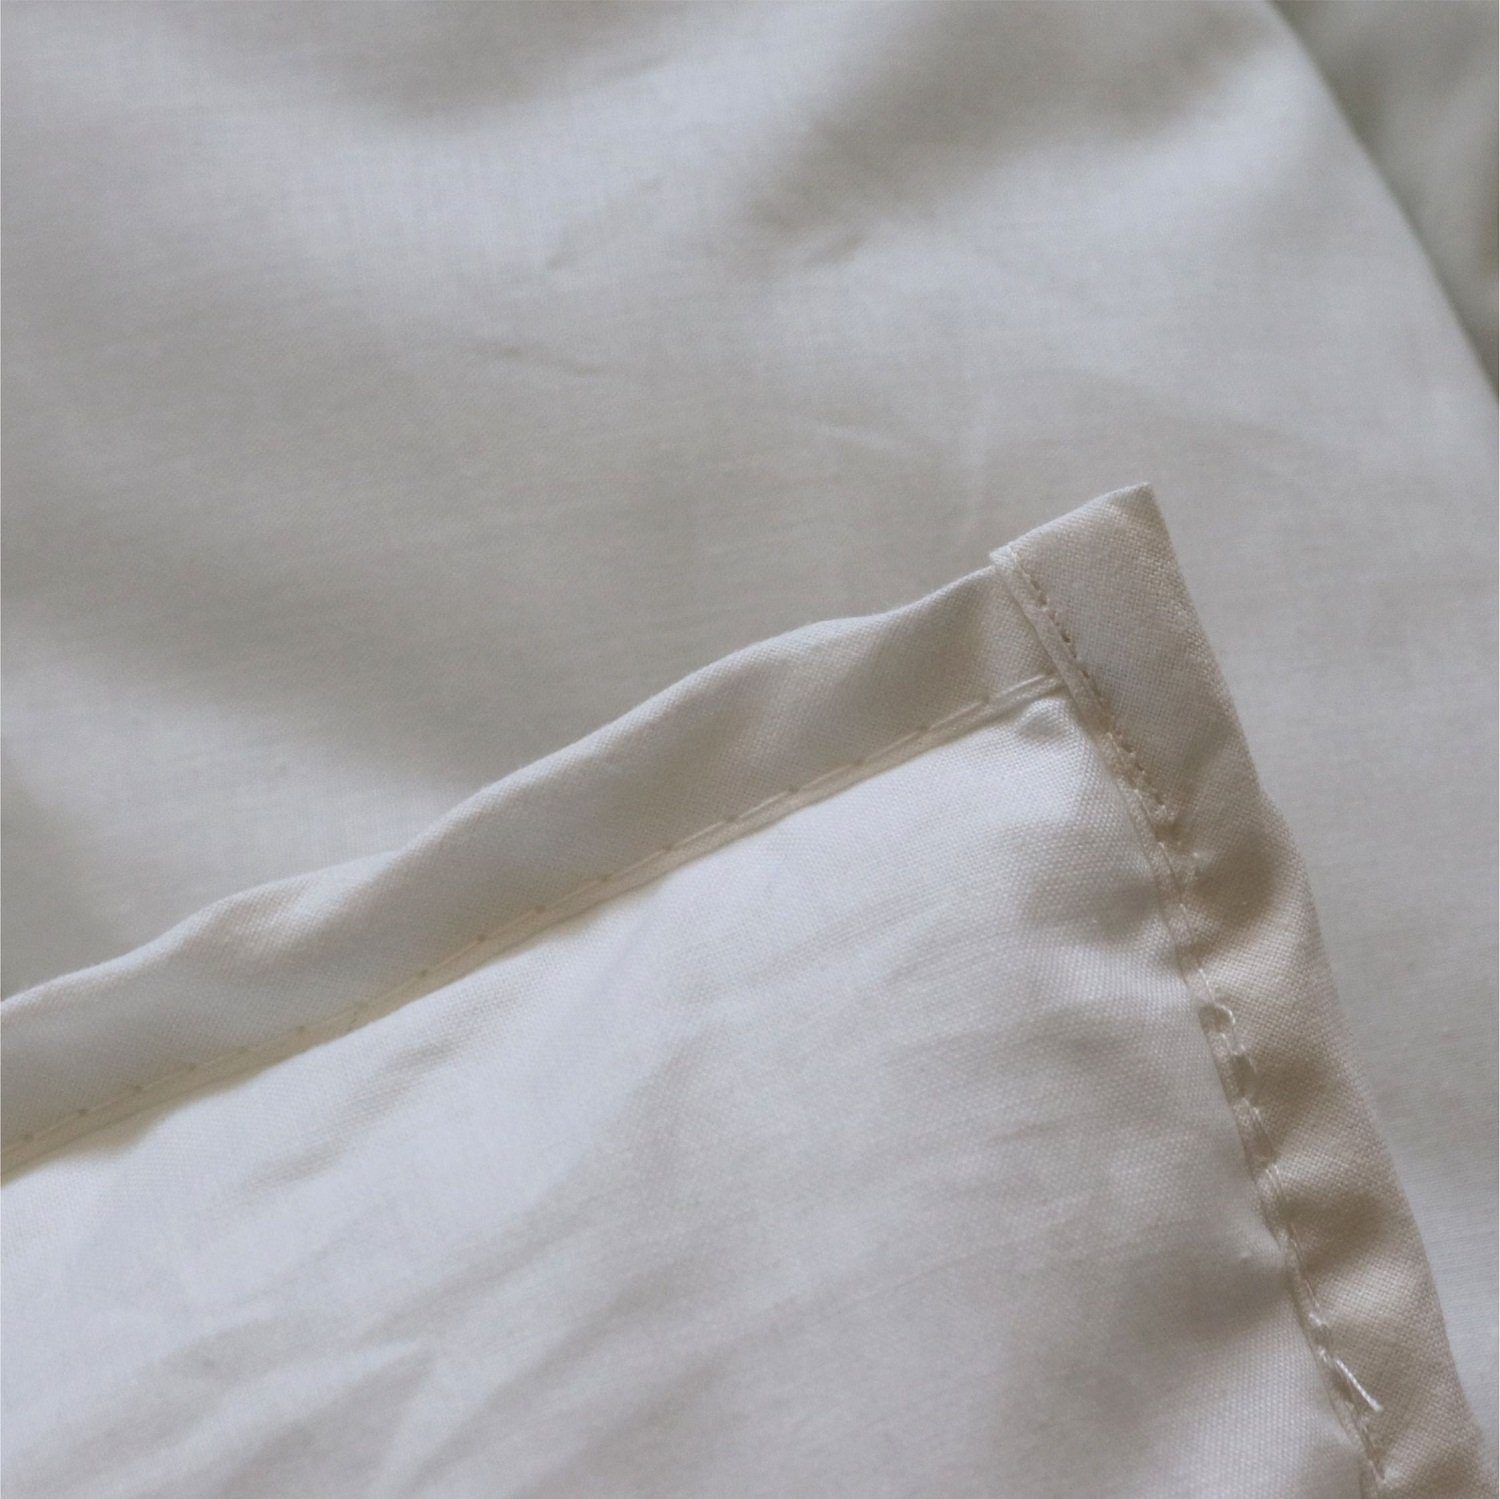 zusammengenähten ist Füllung: Duo-Decke Betten warme Decke zwei Wärmeklasse flauschig Traumland, Decken. 5 dick, die aus eine Die Duo-Decke Extra Tencelmischung, Naturfaserbettdecke, Winterdecke